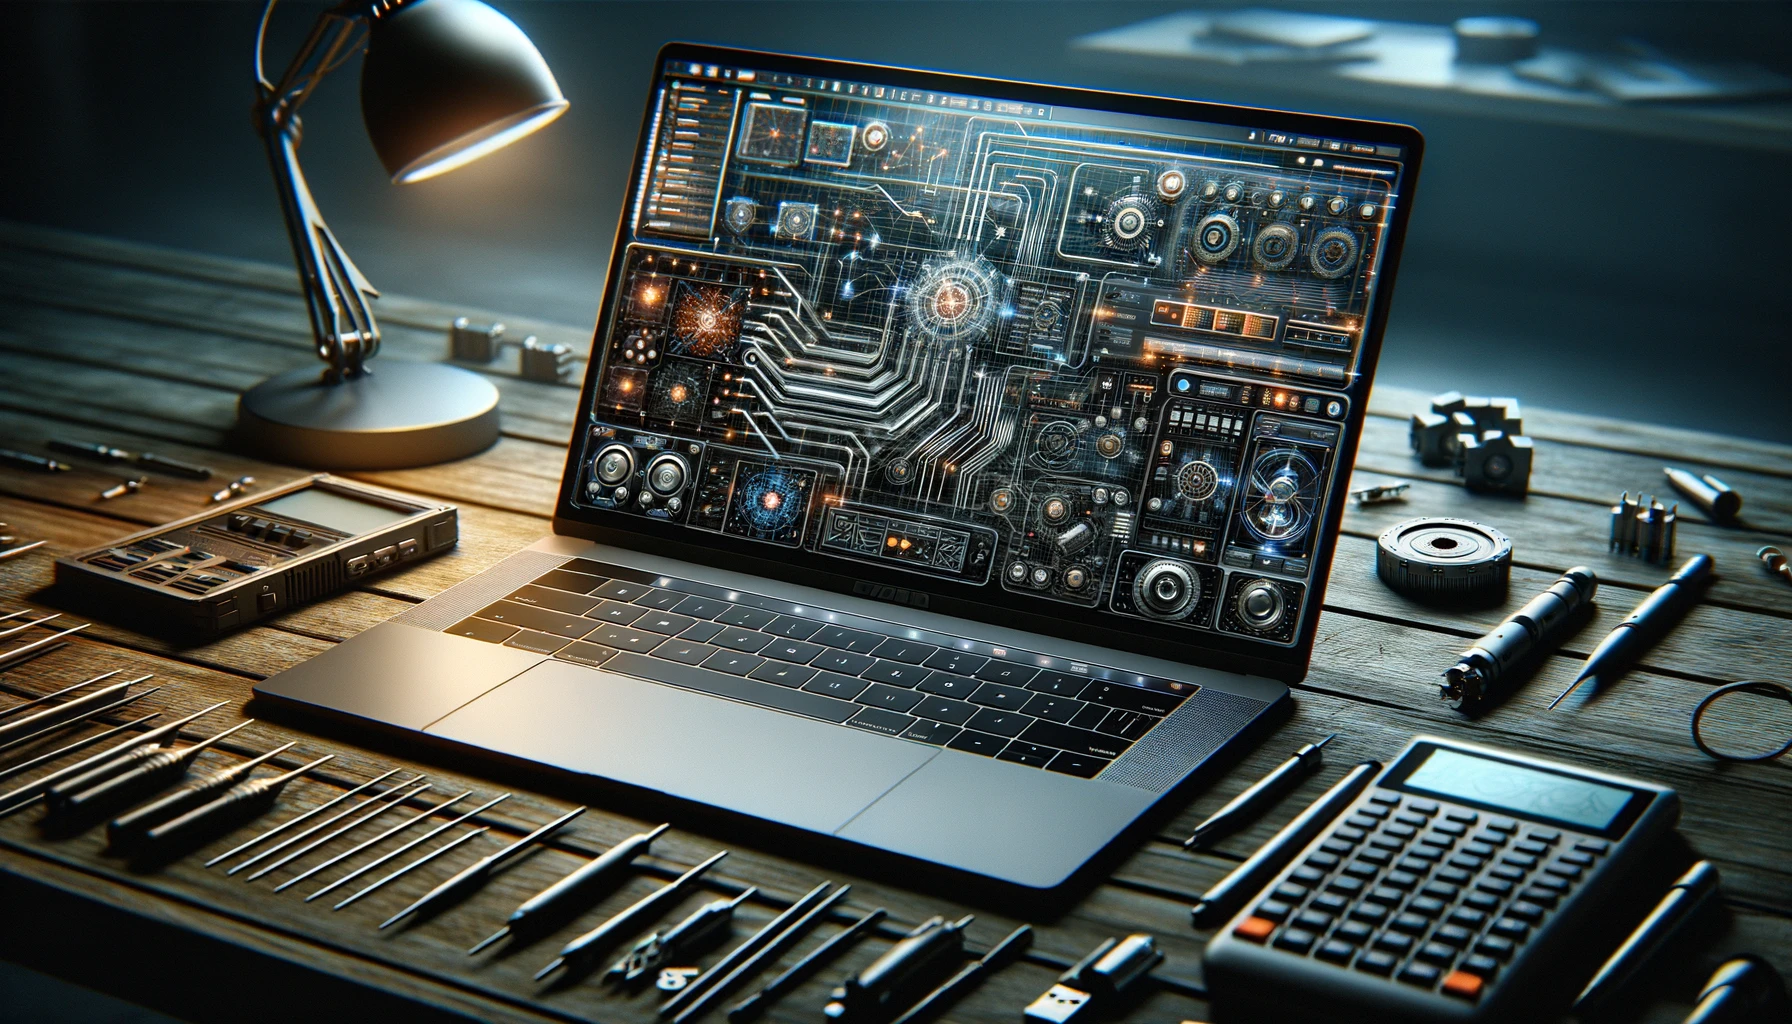 Una foto orizzontale e realistica di un banco da lavoro con accanto un kit per esperimenti elettronici rappresenta un laptop con un simulatore elettronico aperto che mostra lo stesso circuito